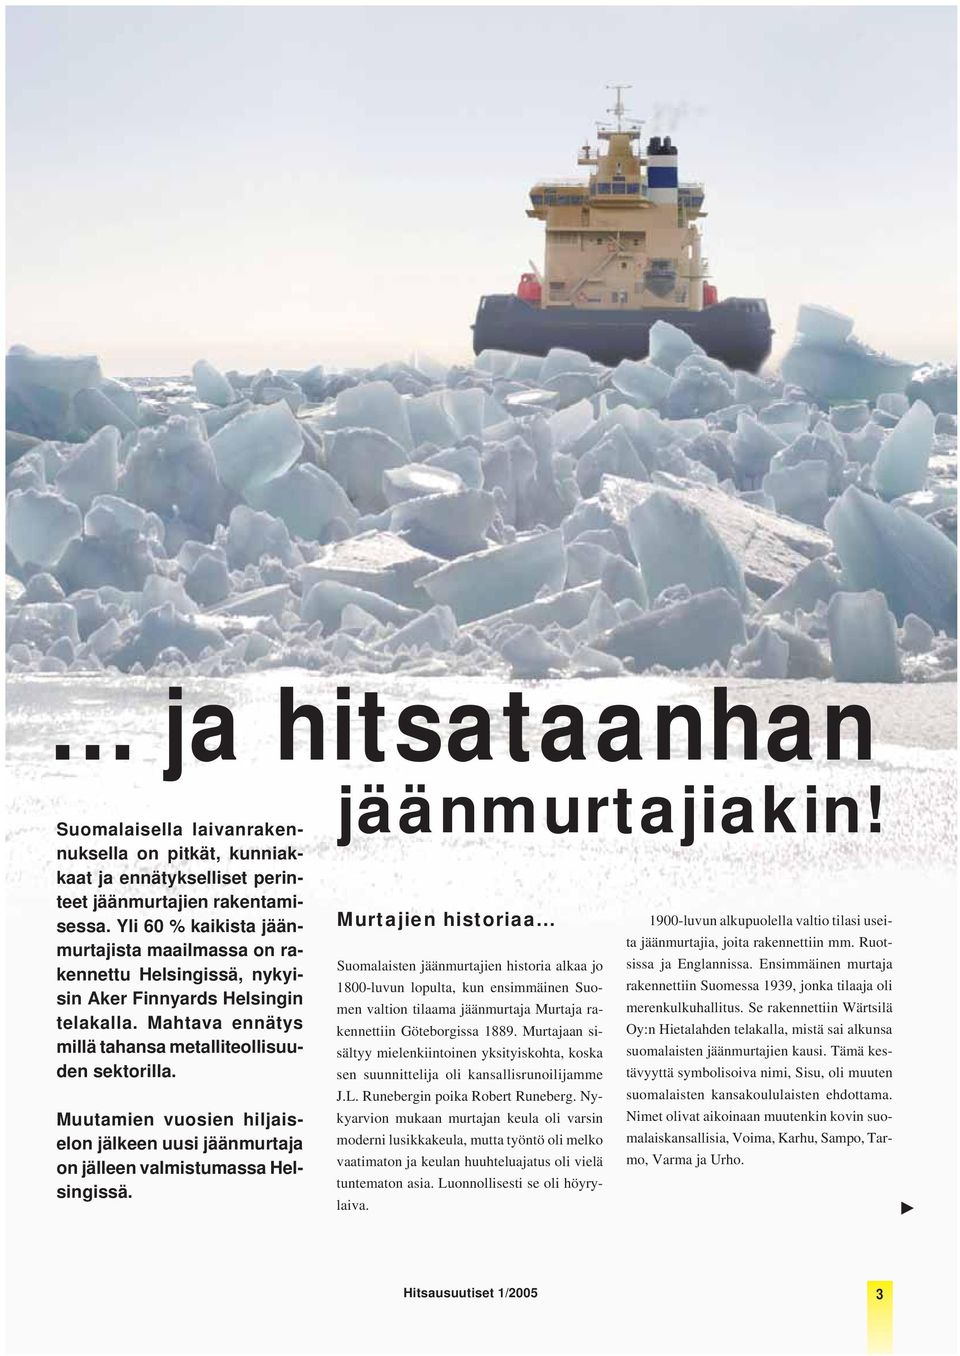 Muutamien vuosien hiljaiselon jälkeen uusi jäänmurtaja on jälleen valmistumassa Helsingissä. jäänmurtajiakin! Murtajien historiaa.